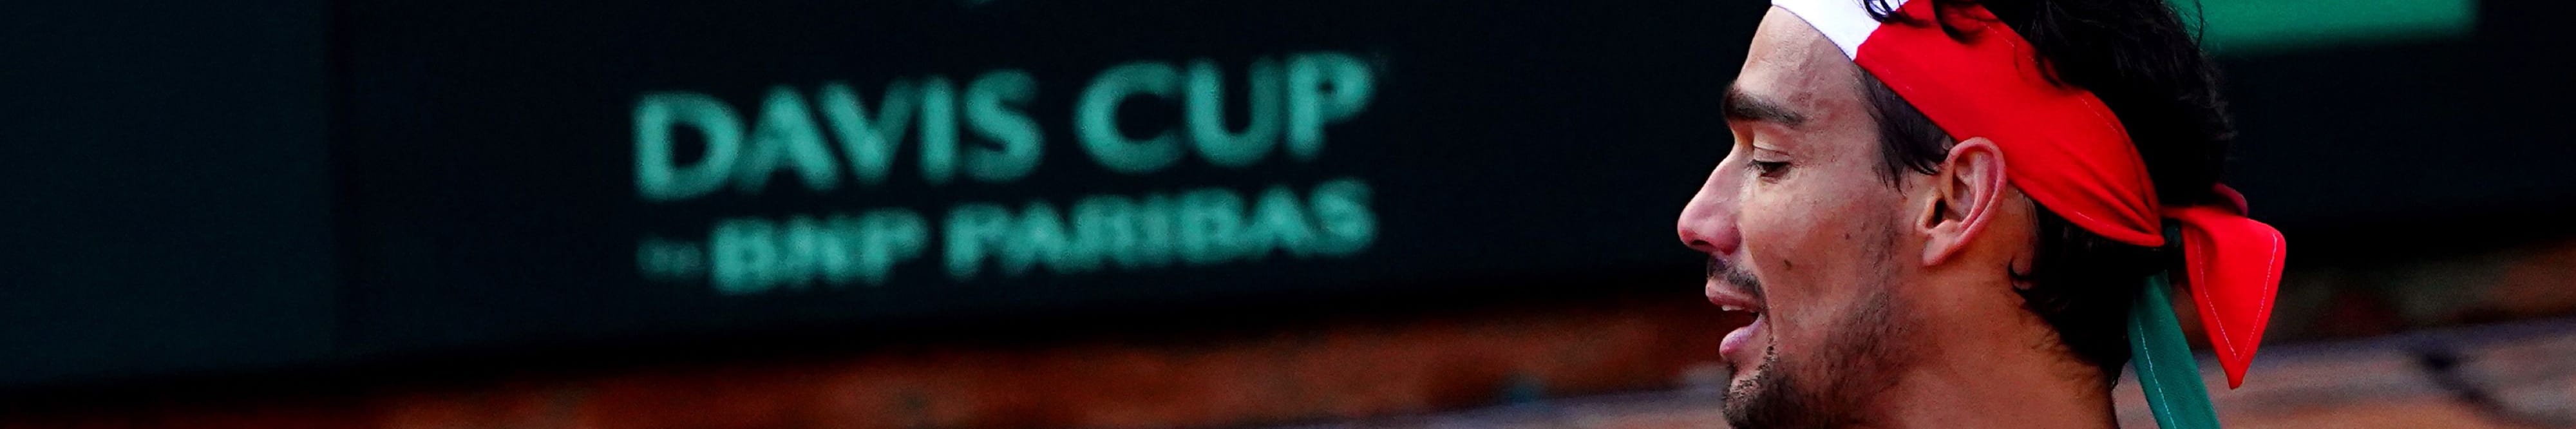 Davis Cup: So soll das viel kritisierte, neue Format ablaufen